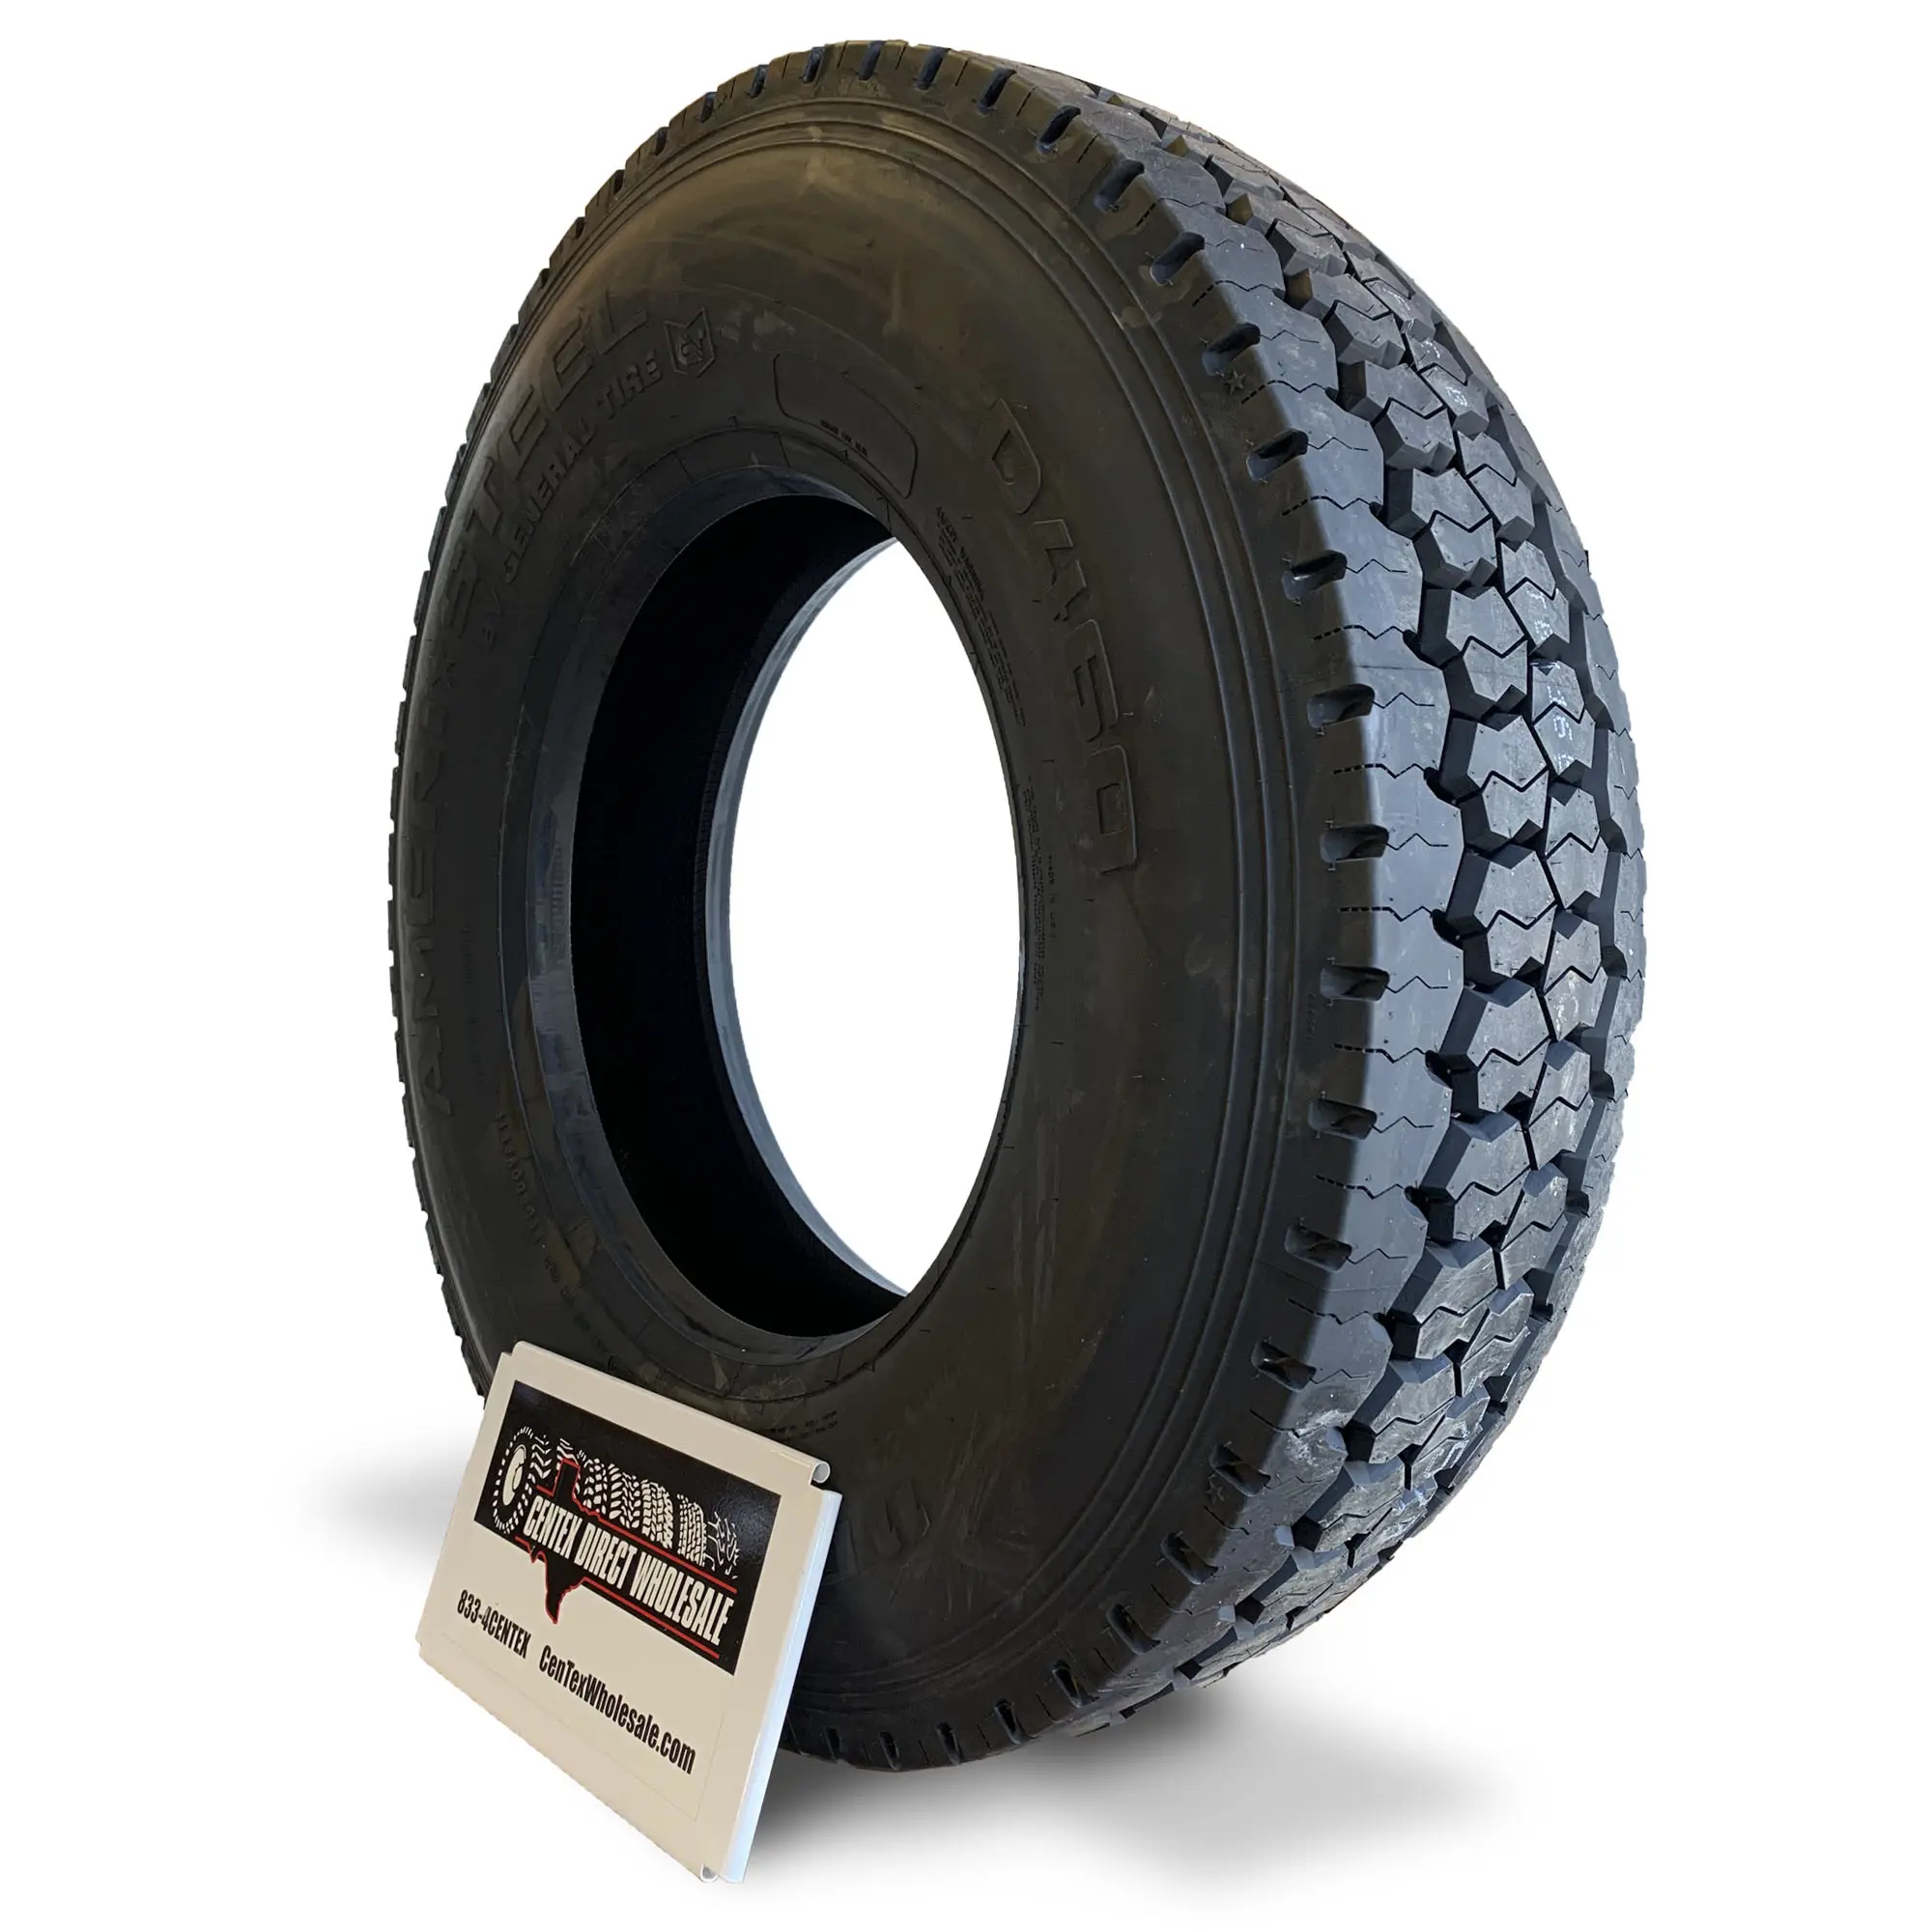 고품질 공장 가격 315 80r22.5 도매 트럭 타이어는 22.5x9.00 트럭 테두리가 적합합니다.